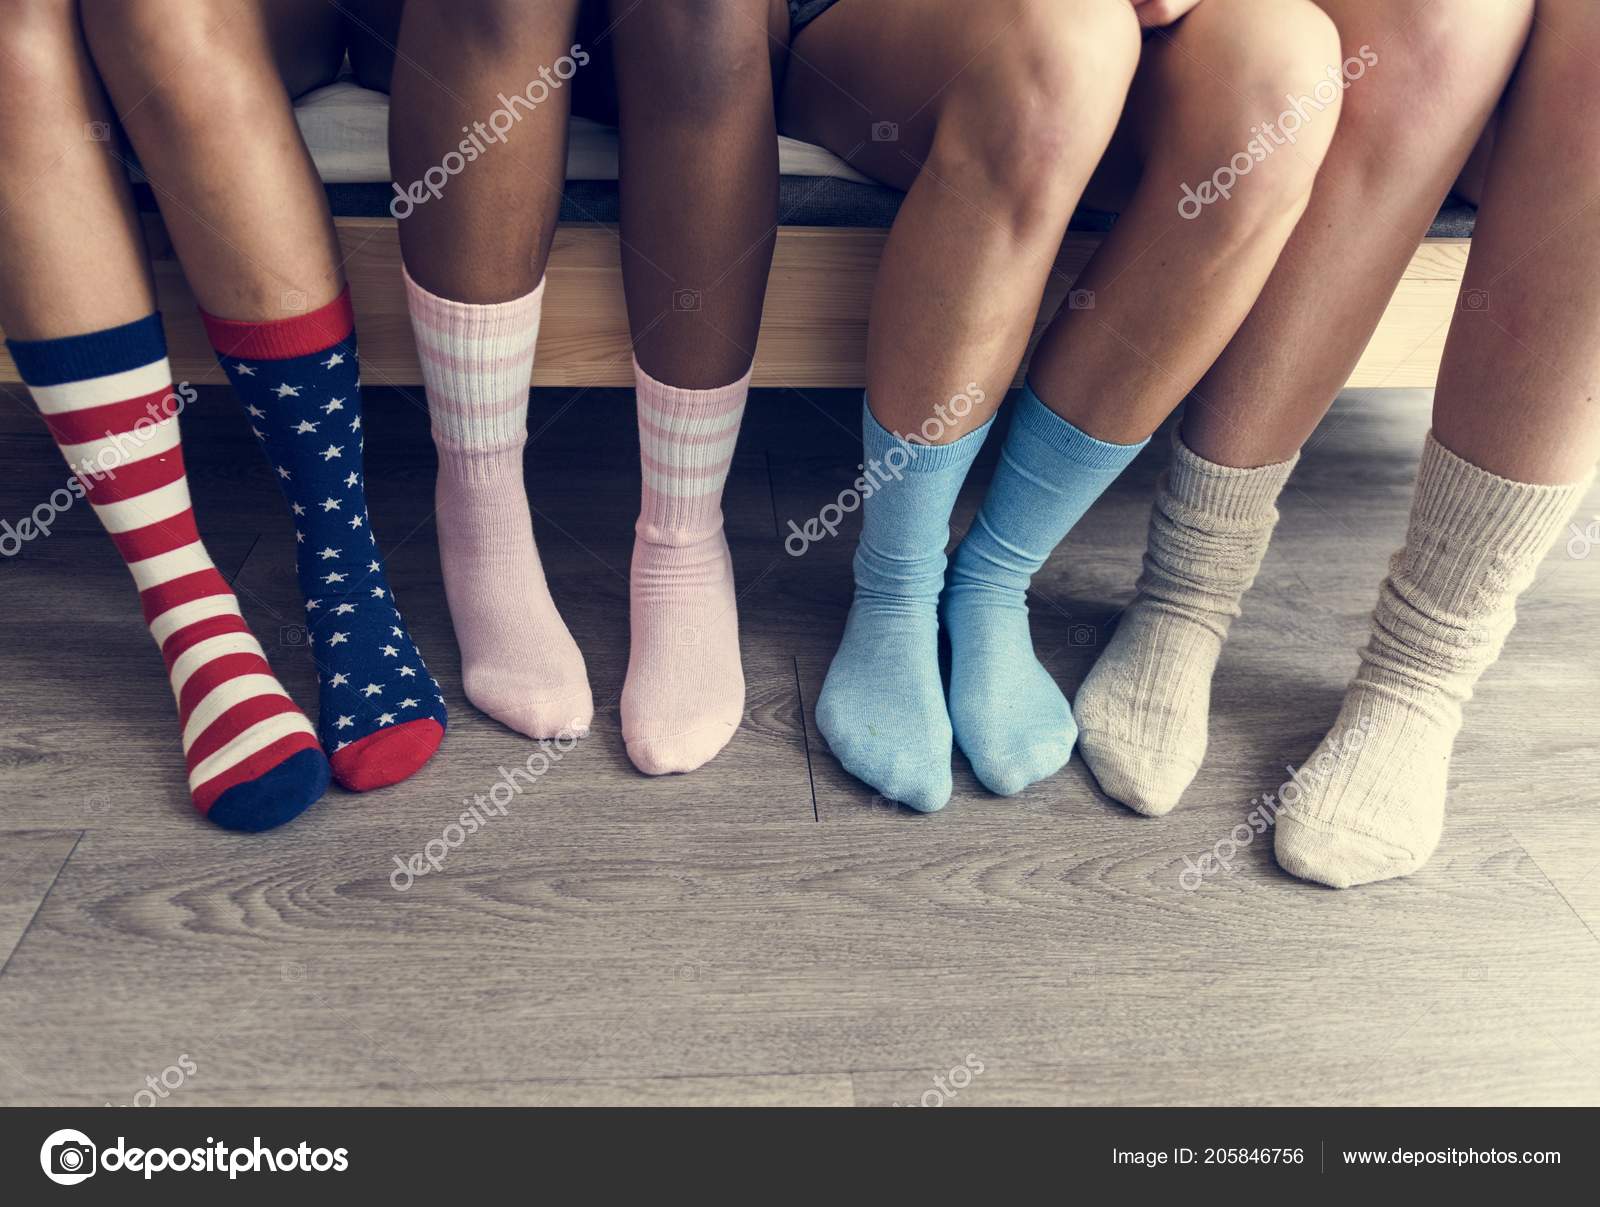 Mujeres con calcetas fotos de stock, imágenes de Mujeres calcetas sin royalties | Depositphotos